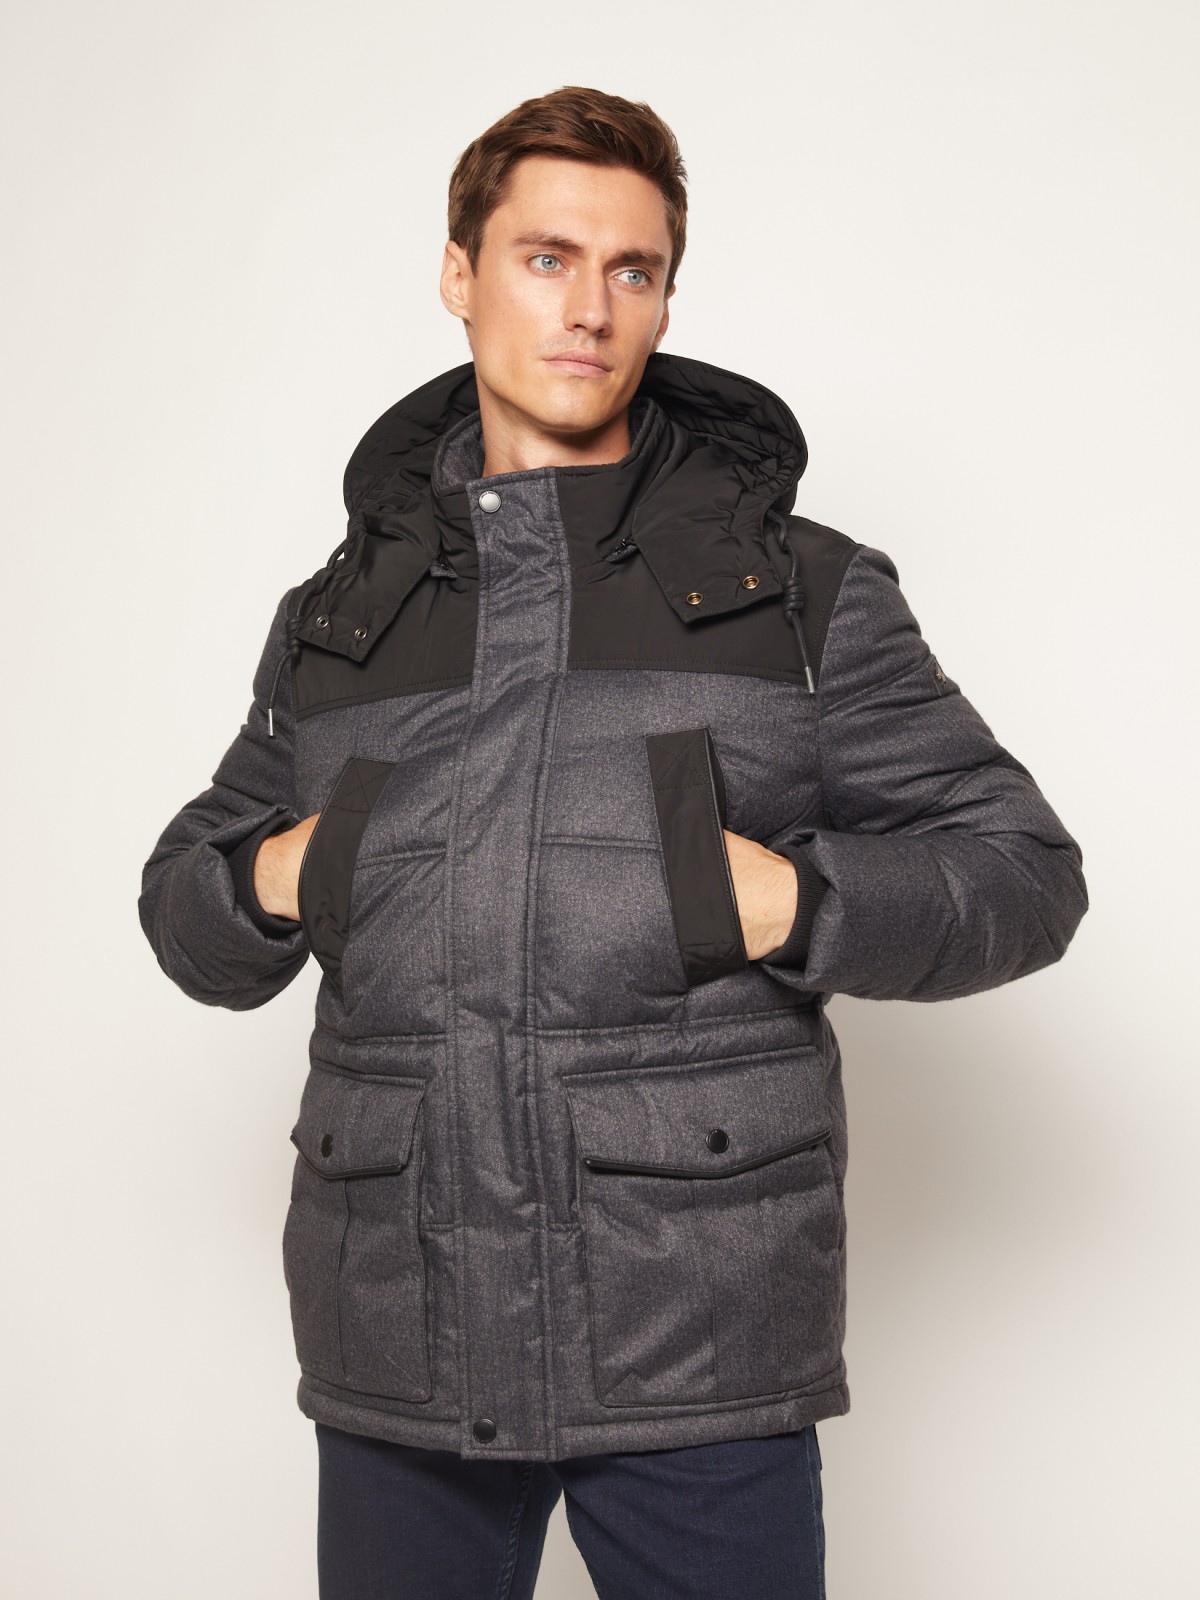 Тёплая куртка с накладными карманами zolla 010345112044, цвет серый, размер S - фото 2